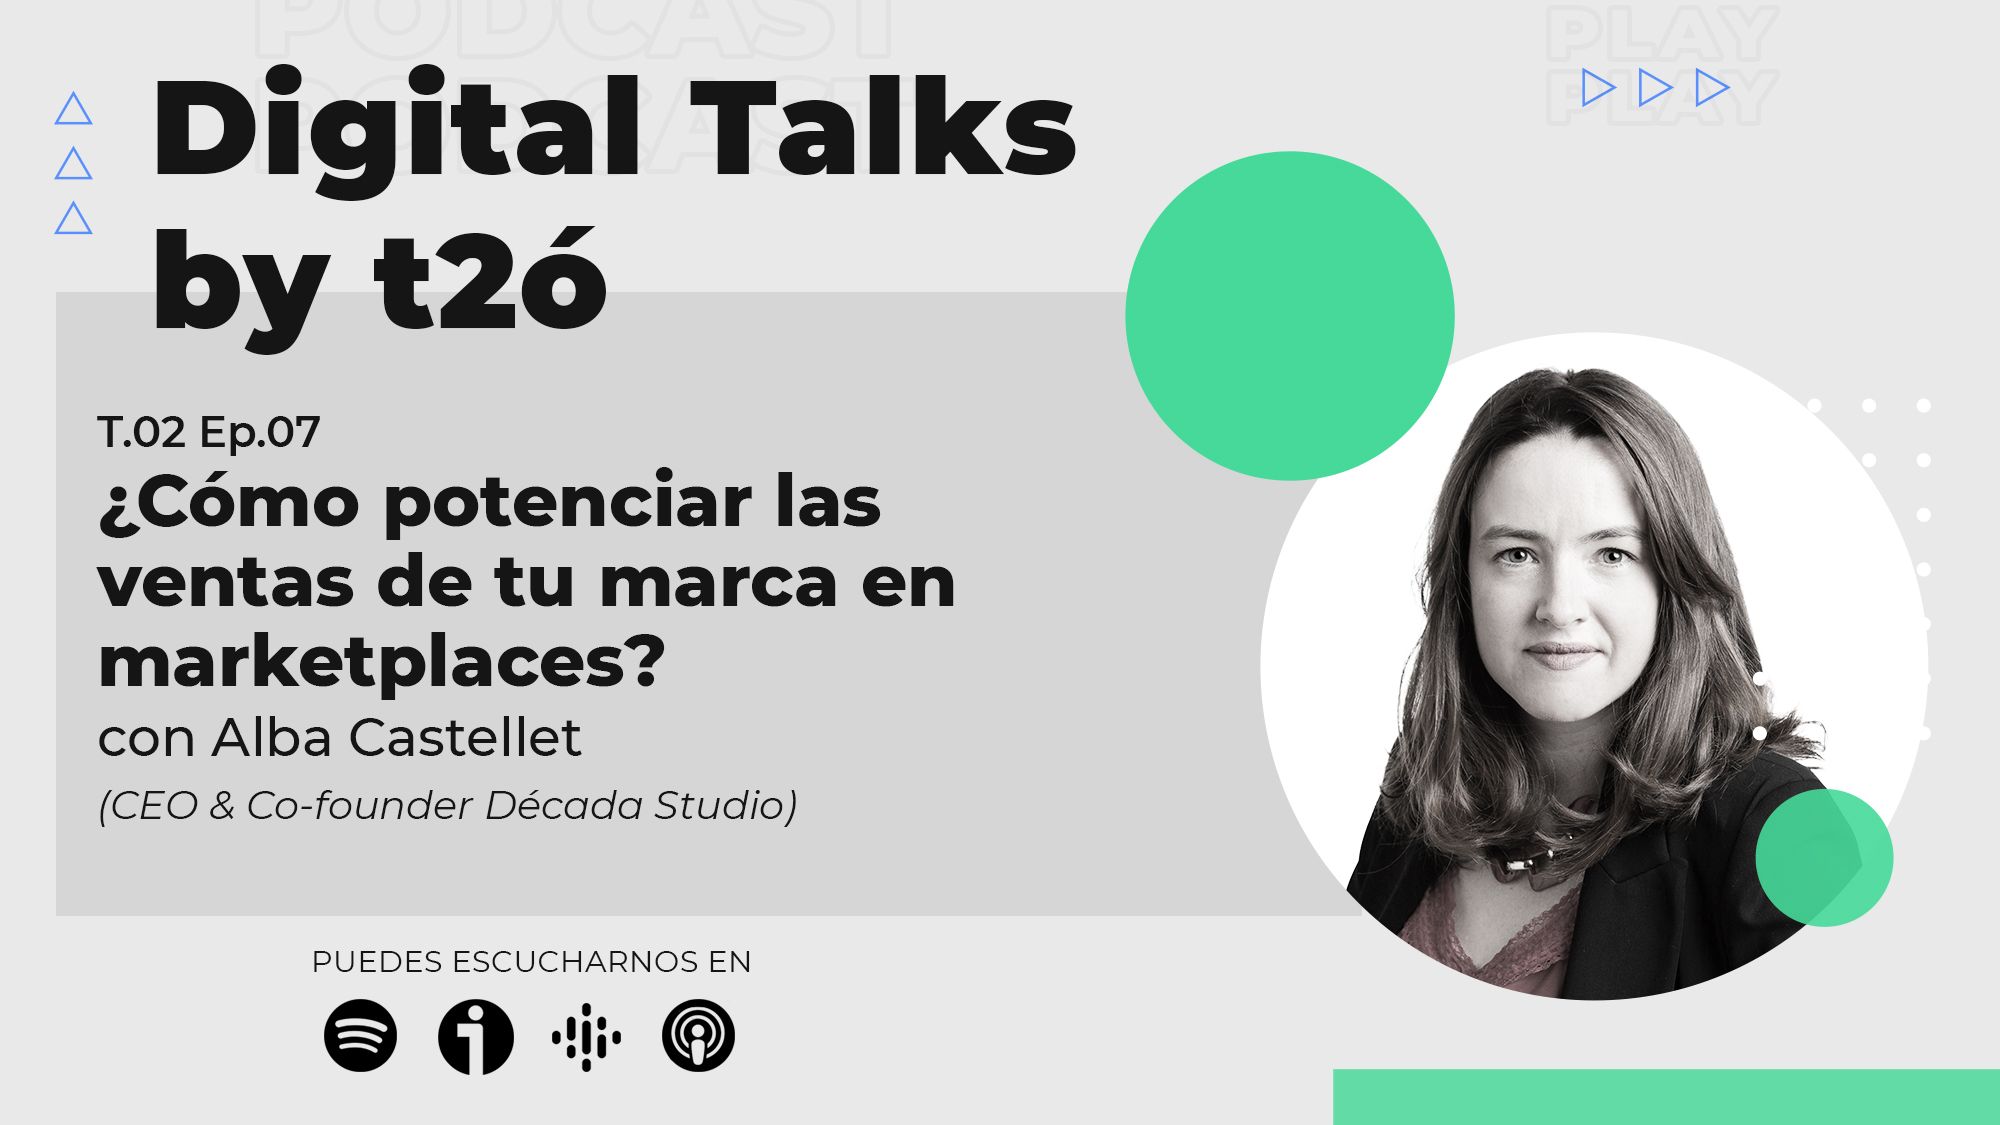 arketplaces y Retail: Podcast con Alba Castellet